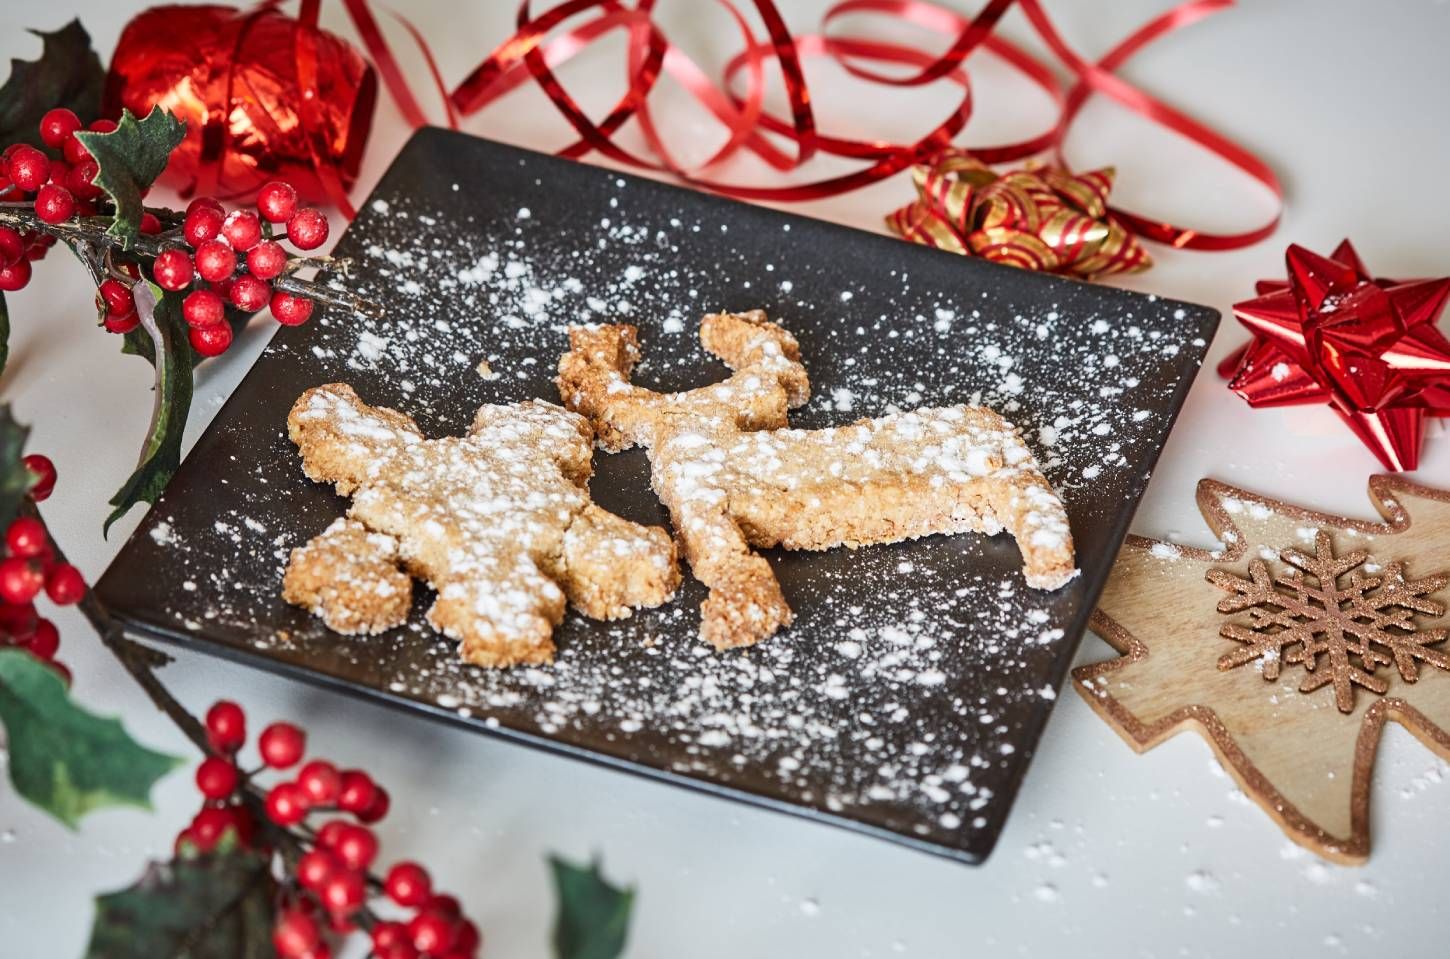 Receta de Navidad en vídeo: galletas de avena saludables